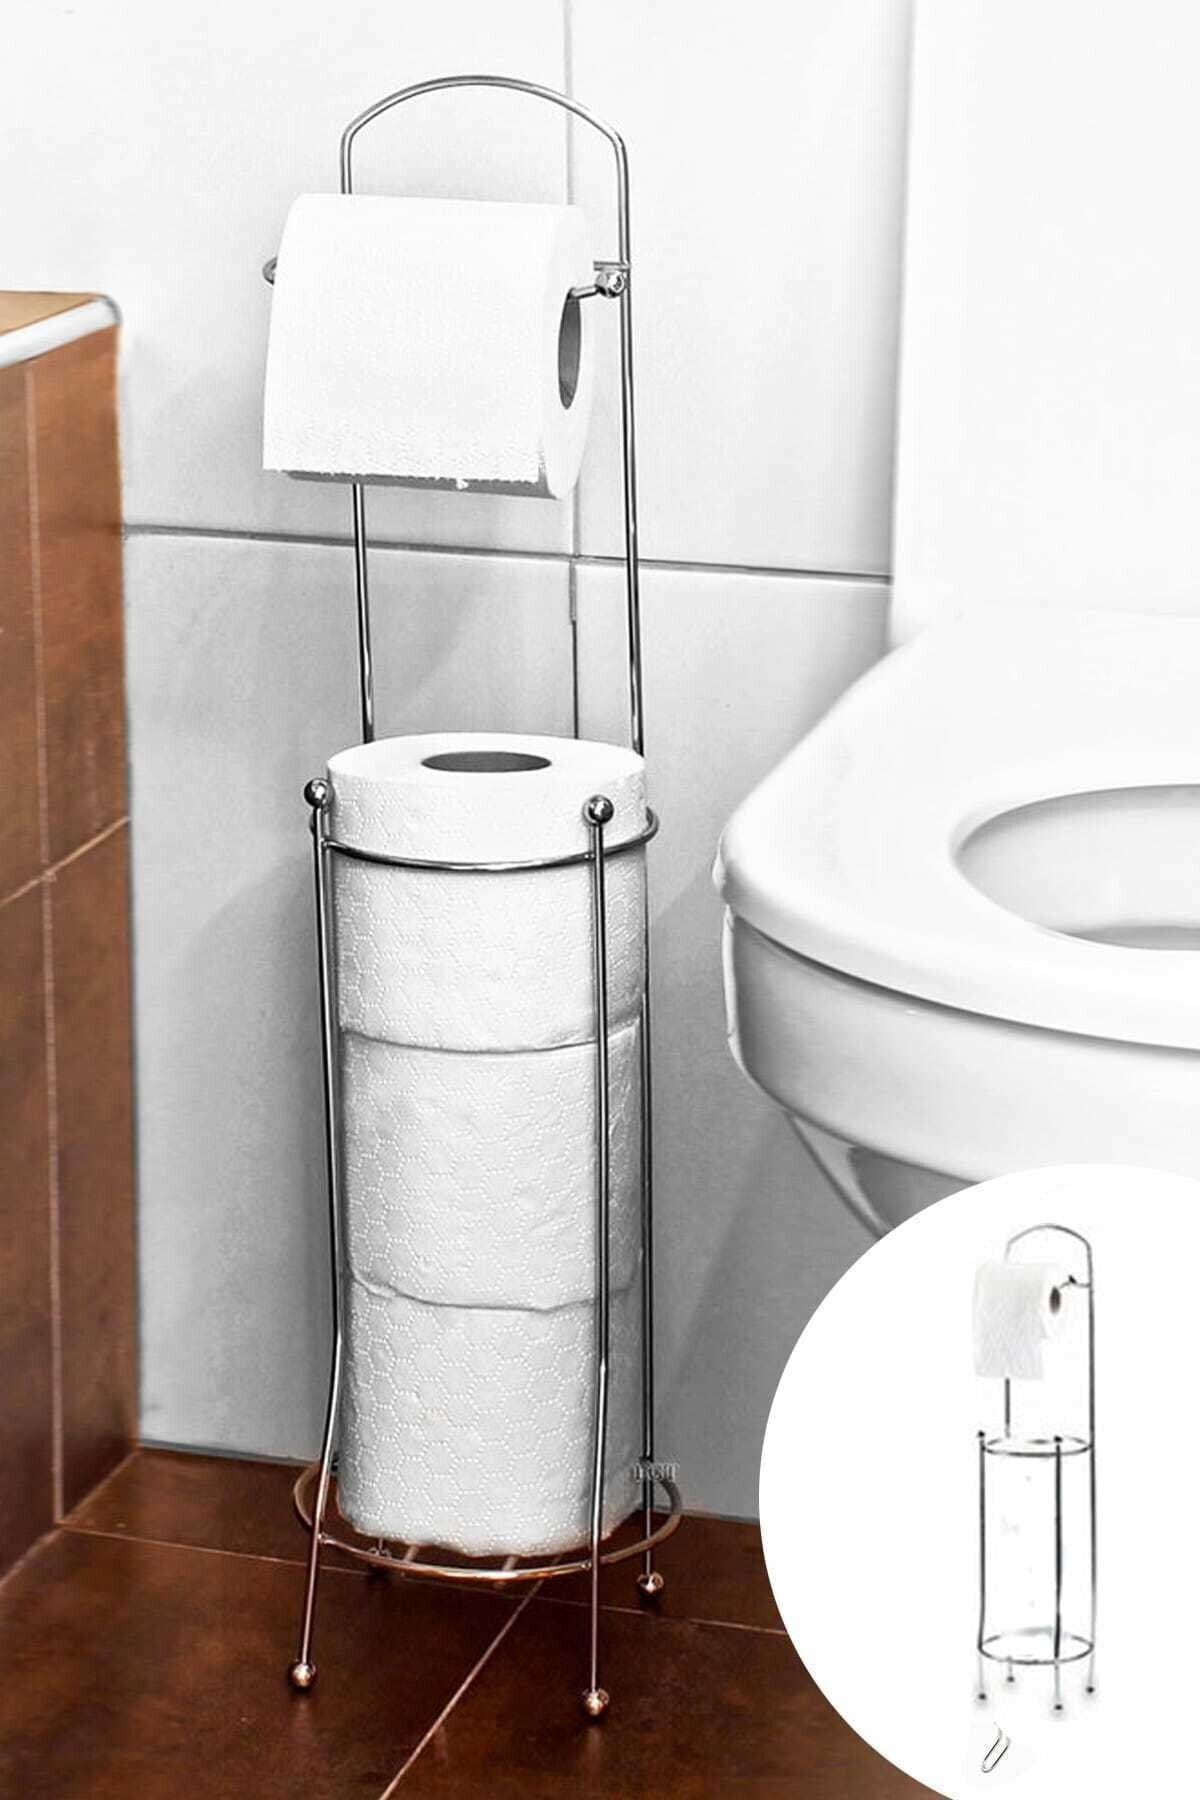 Yedek Hazneli Ayaklı Tuvalet Wc Paslanmaz Yedekli Tuvalet Kağıtlığı